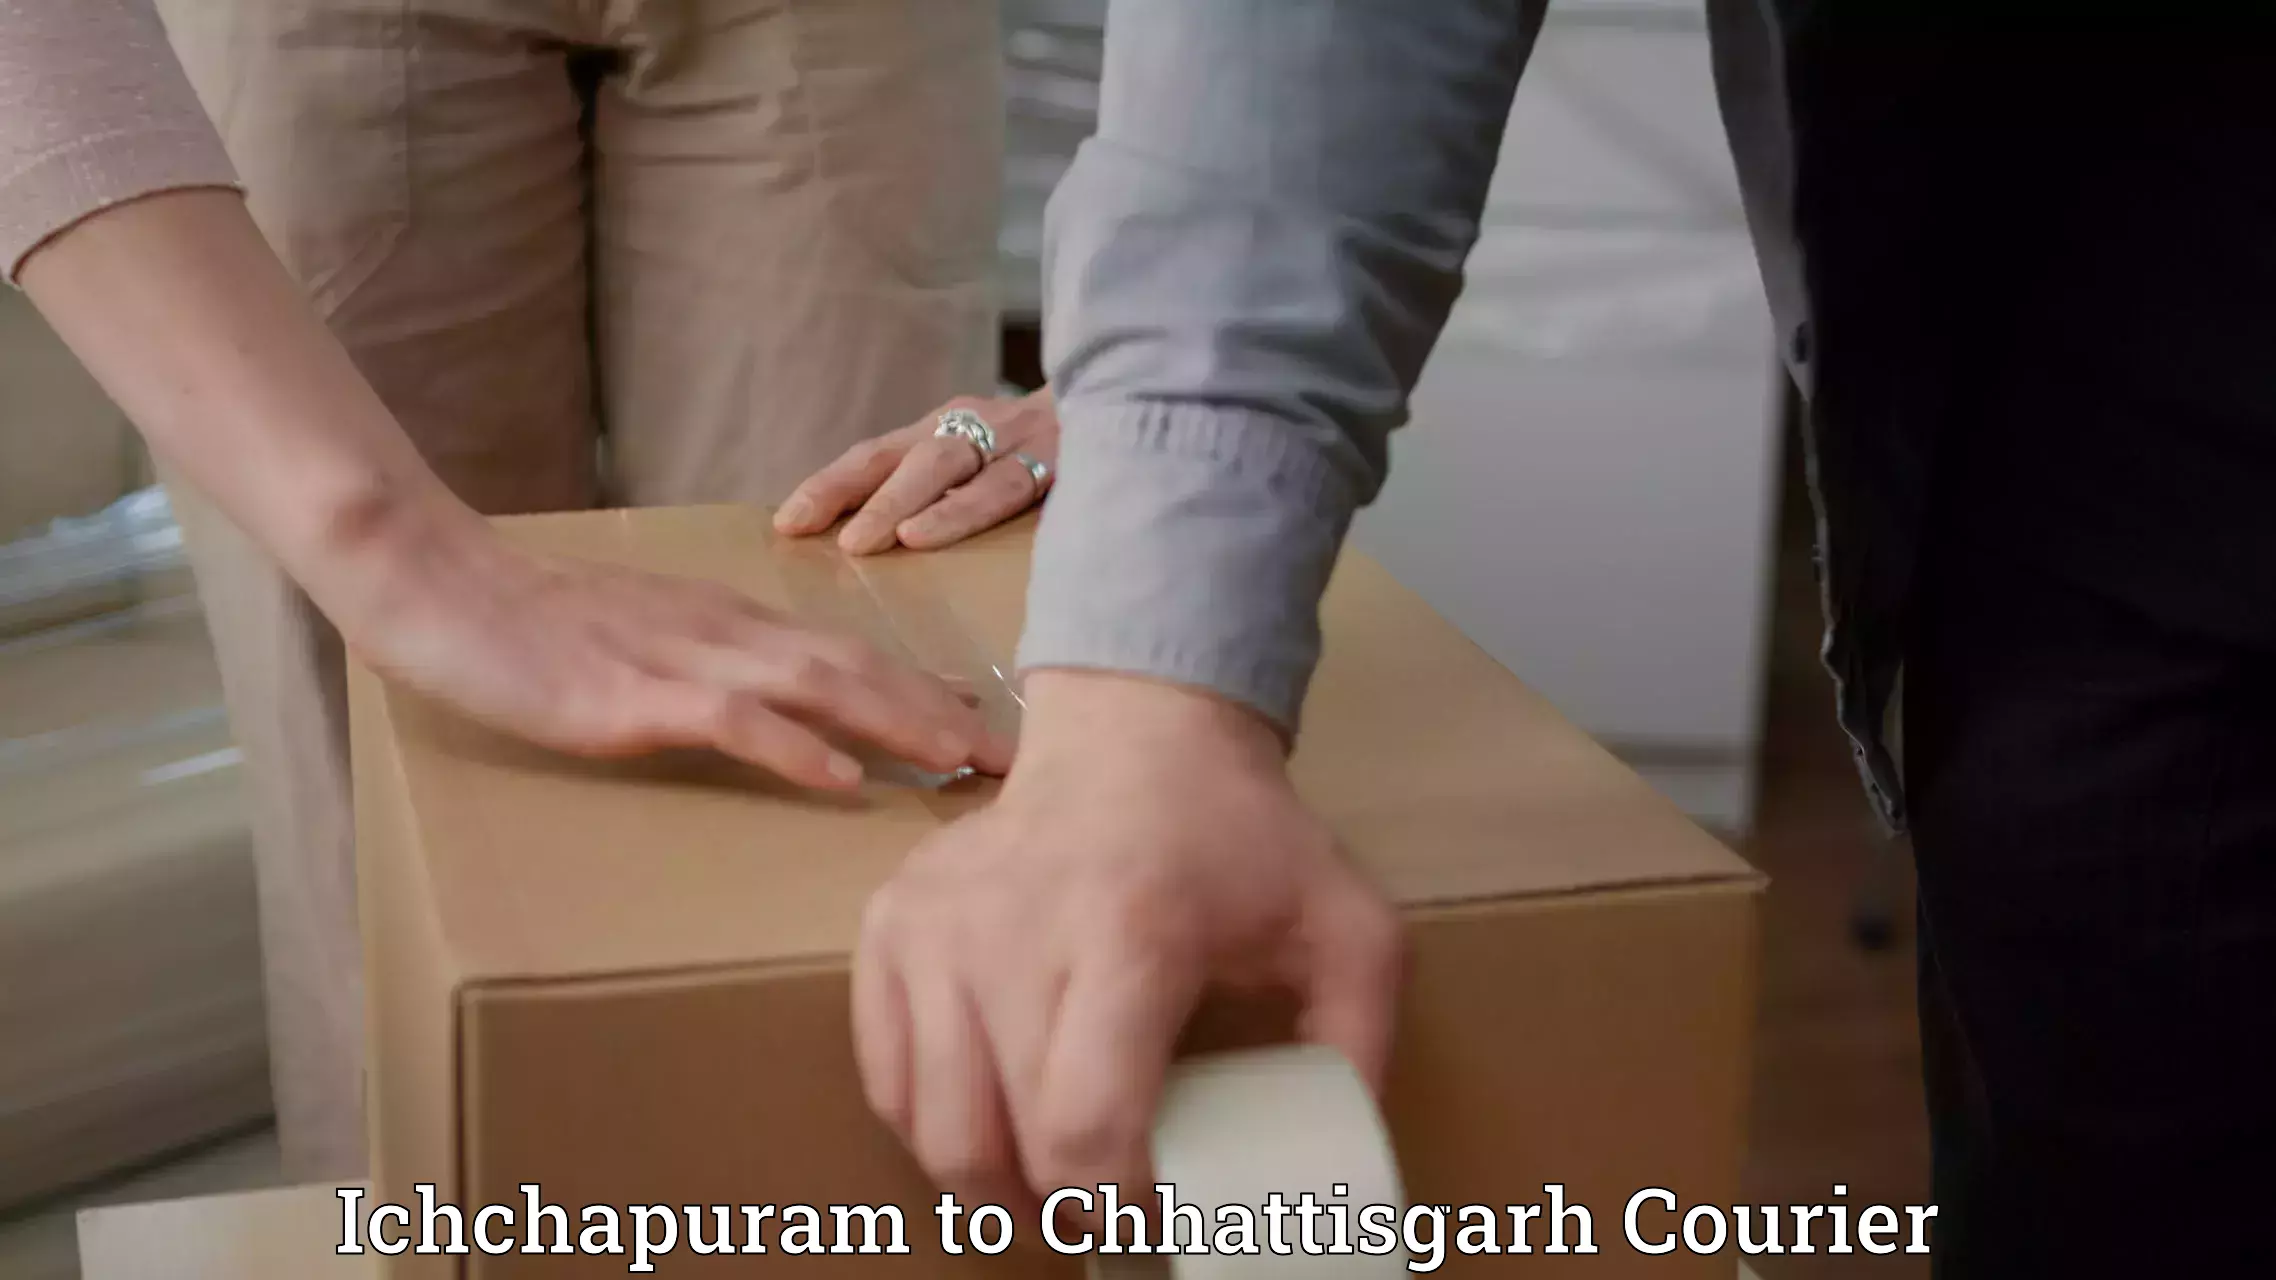 Bulk courier orders Ichchapuram to Bijapur Chhattisgarh